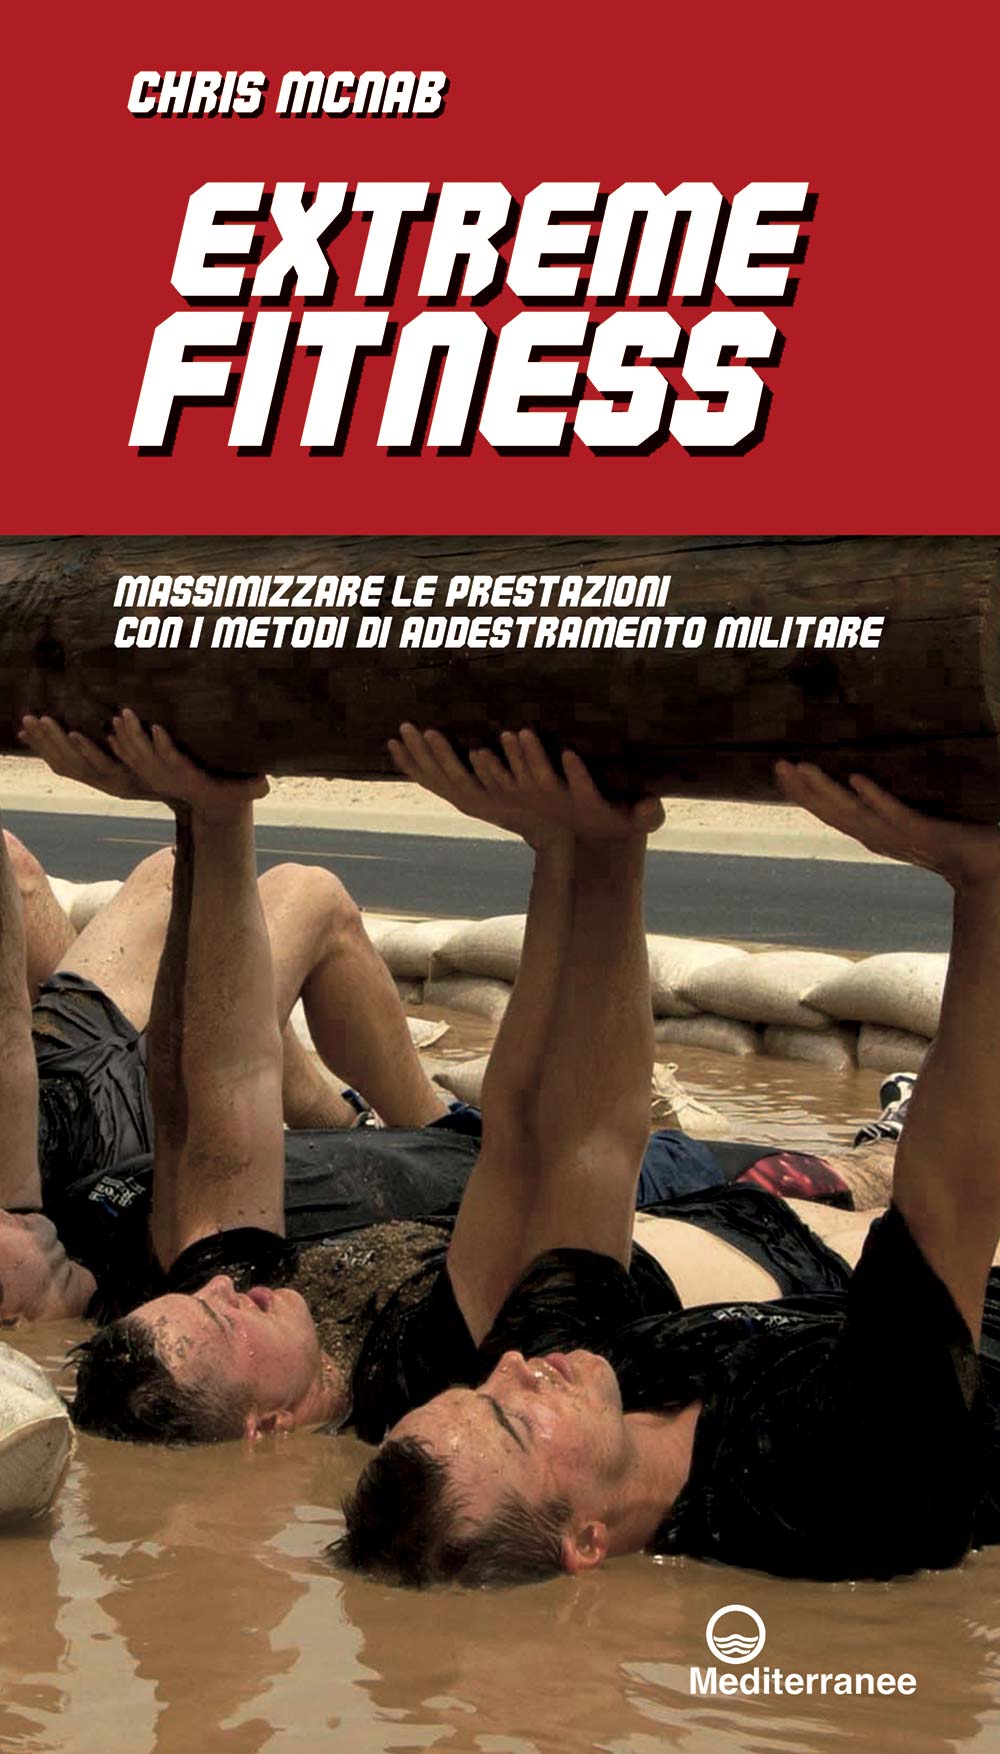 Libri Chris McNab - Extreme Fitness. Massimizzare Le Prestazioni Con I Metodi Di Addestramento Militare NUOVO SIGILLATO, EDIZIONE DEL 20/04/2017 SUBITO DISPONIBILE